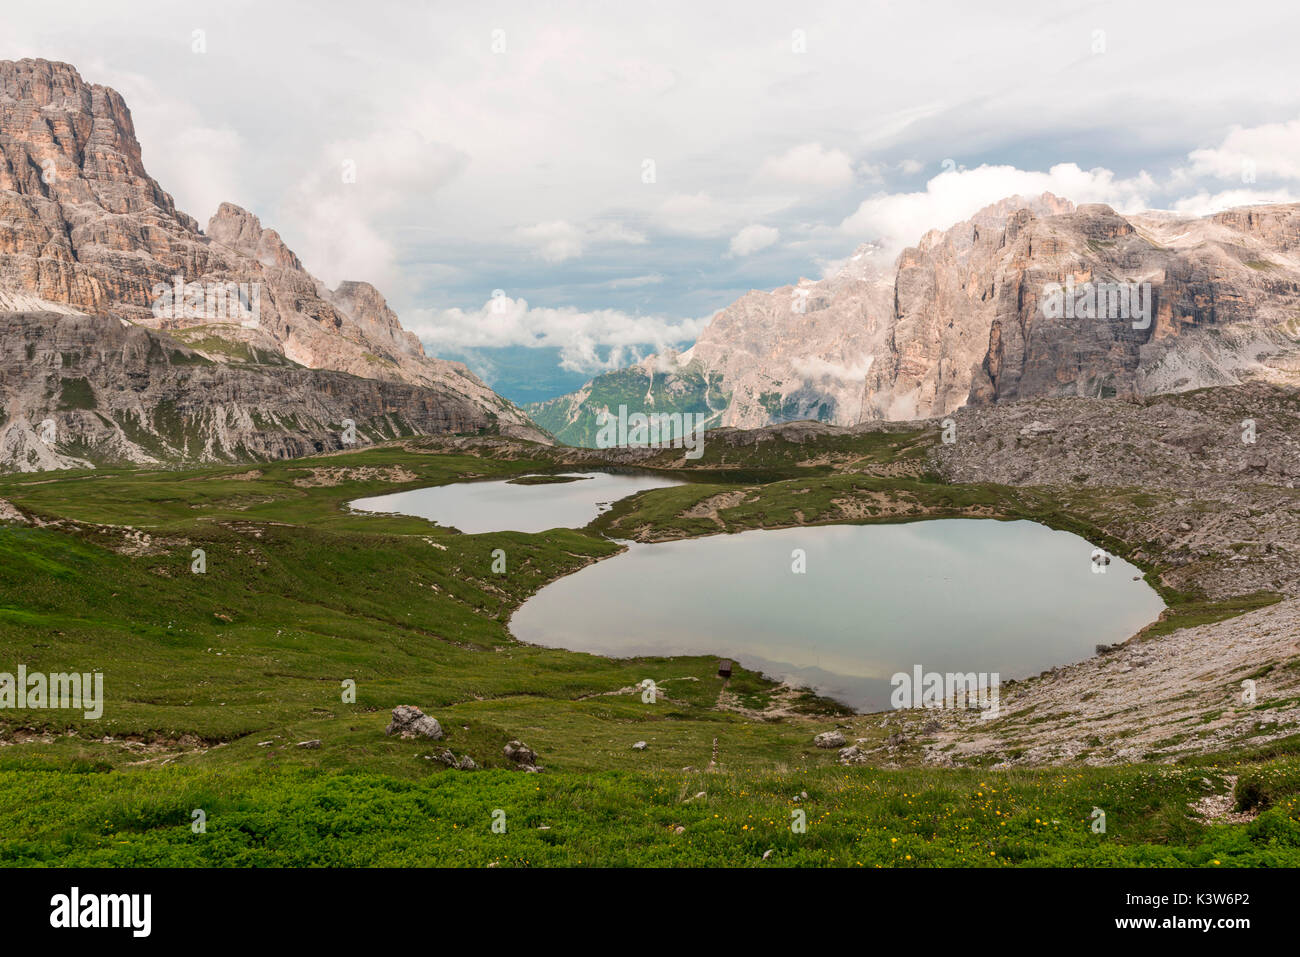 Piani lakes, Sexten Dolomites natural park, Veneto, Italy, Europe. Stock Photo